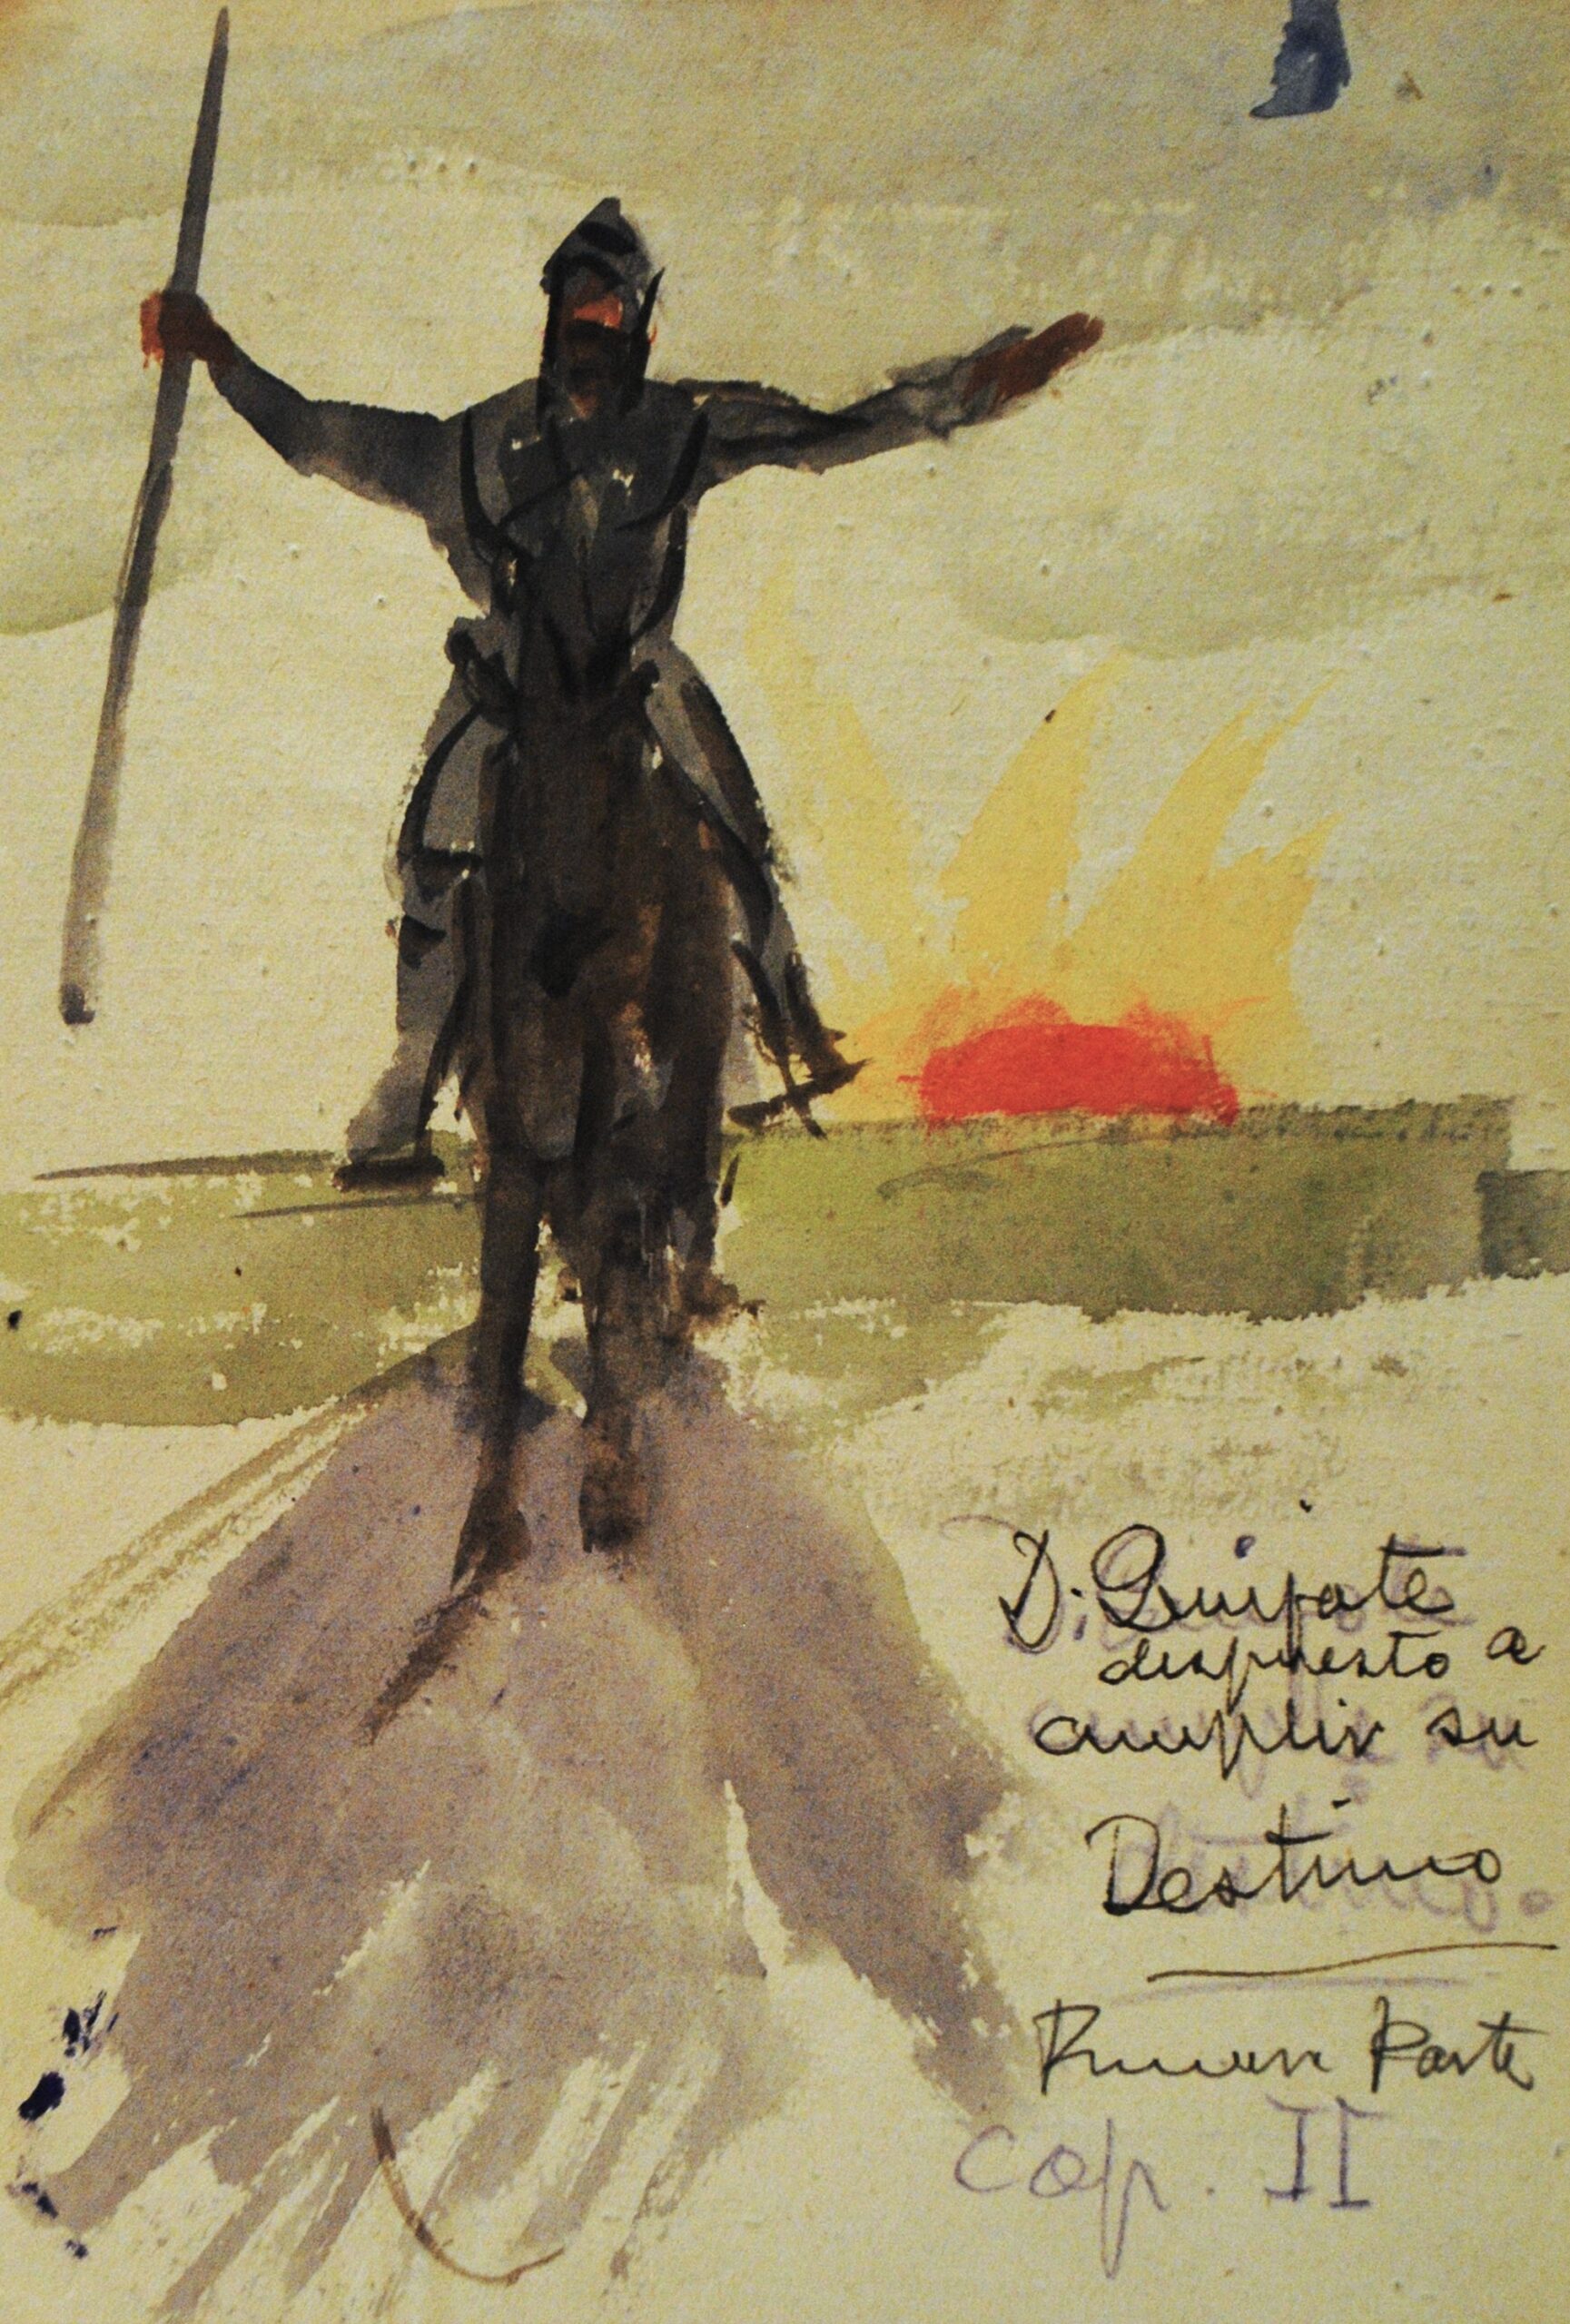 Dibujo de José Manaut. Quijote sobre Rocinante con lanza. Escrito abajo a la izquierda: D. Quijote dispuesto a cumplir su Destino. Primera parte, capítulo II.